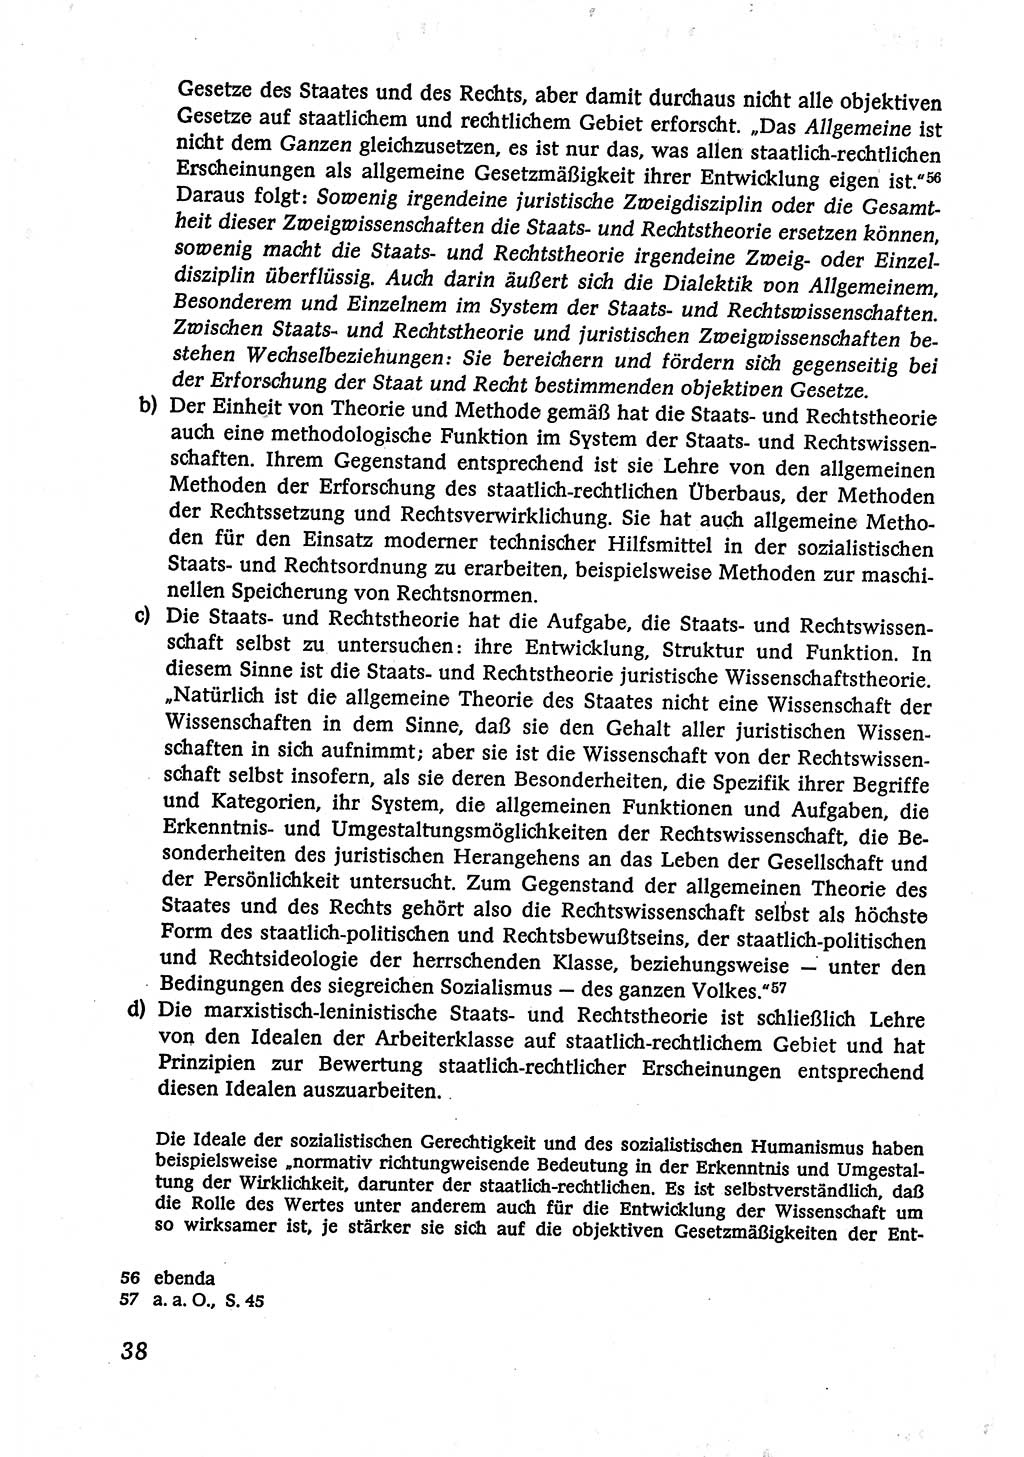 Marxistisch-leninistische (ML) Staats- und Rechtstheorie [Deutsche Demokratische Republik (DDR)], Lehrbuch 1980, Seite 38 (ML St.-R.-Th. DDR Lb. 1980, S. 38)